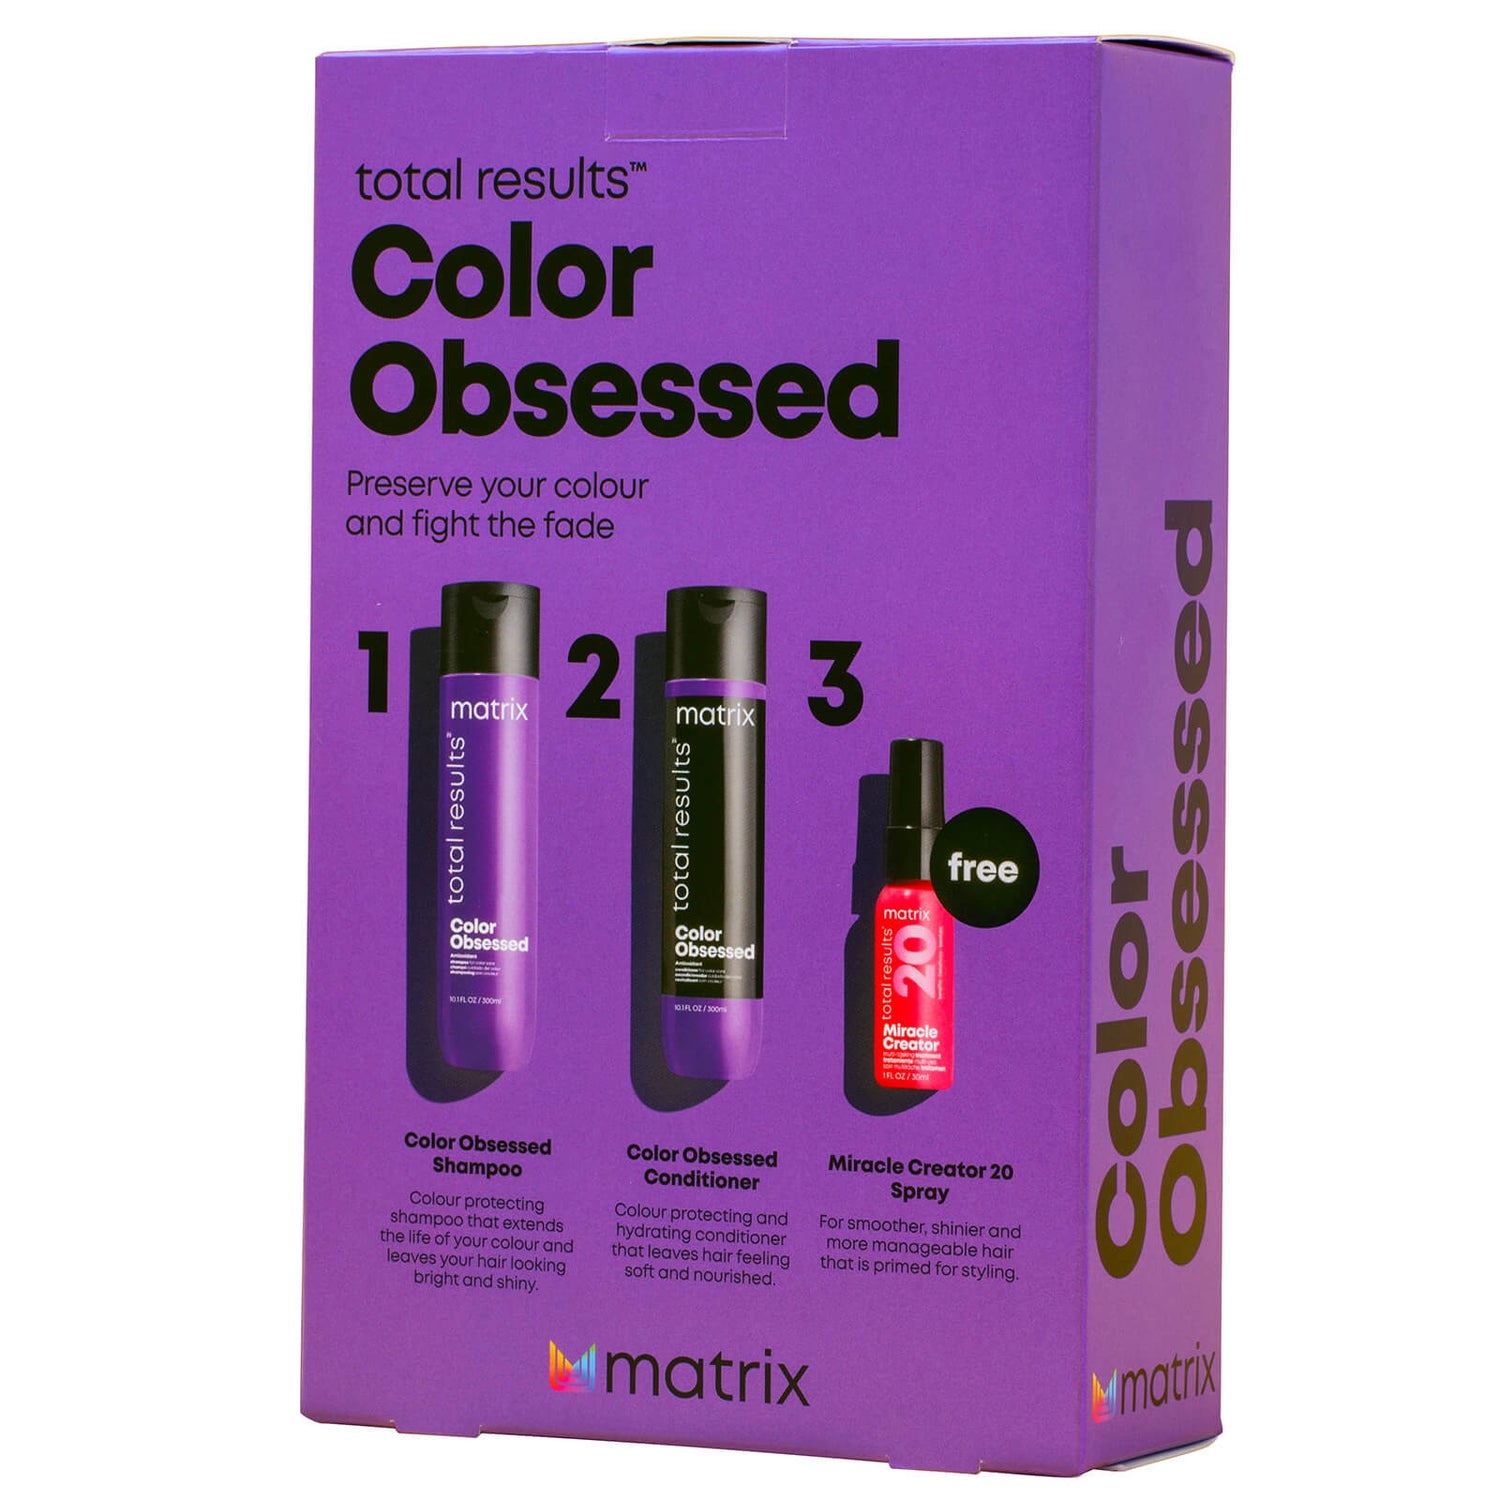 Matrix Total Results Colour Obsessed gave sæt